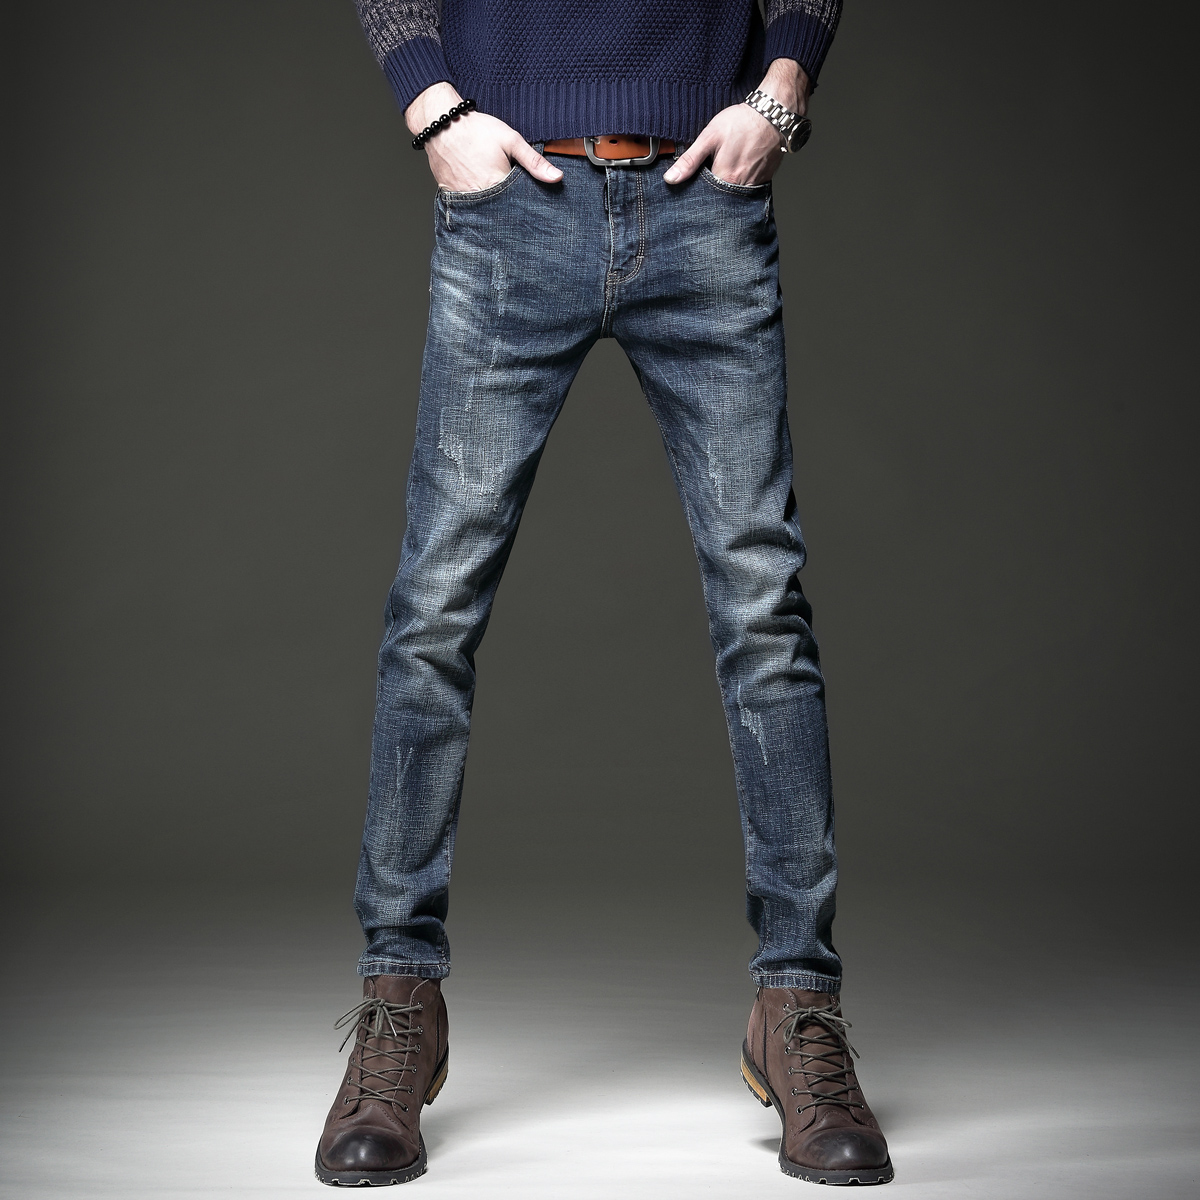 Autumn retro jeans men's tide brand slim cigarette pants Korean version trend all-match casual men's high-end long pants